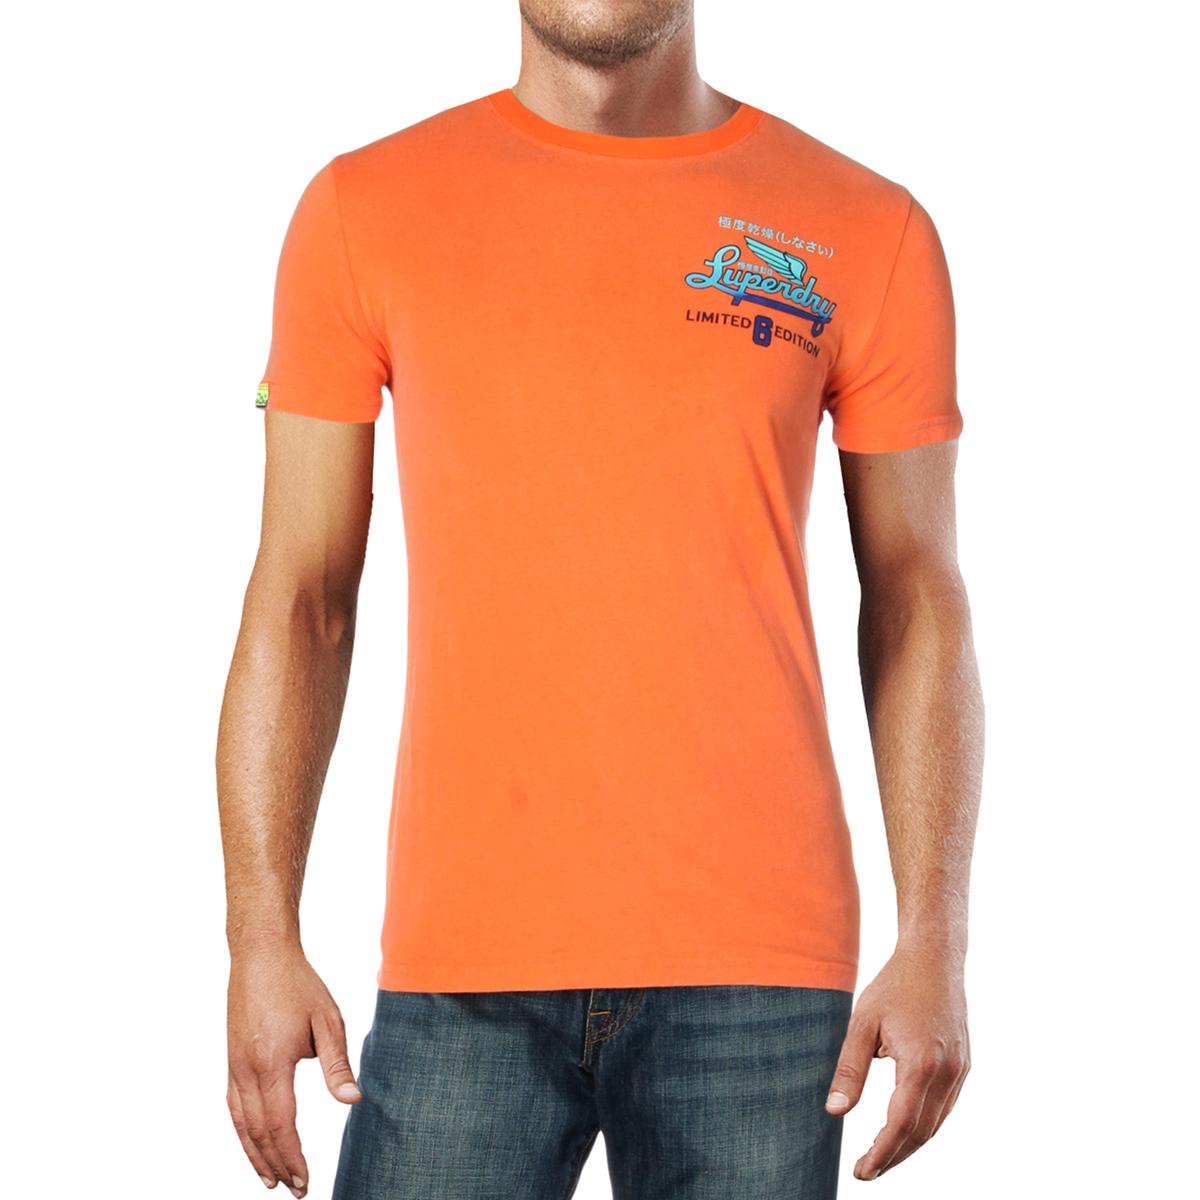 Superdry Mens Orange Graphic Lightweight Tee T-Shirt XXL BHFO 2318 | eBay